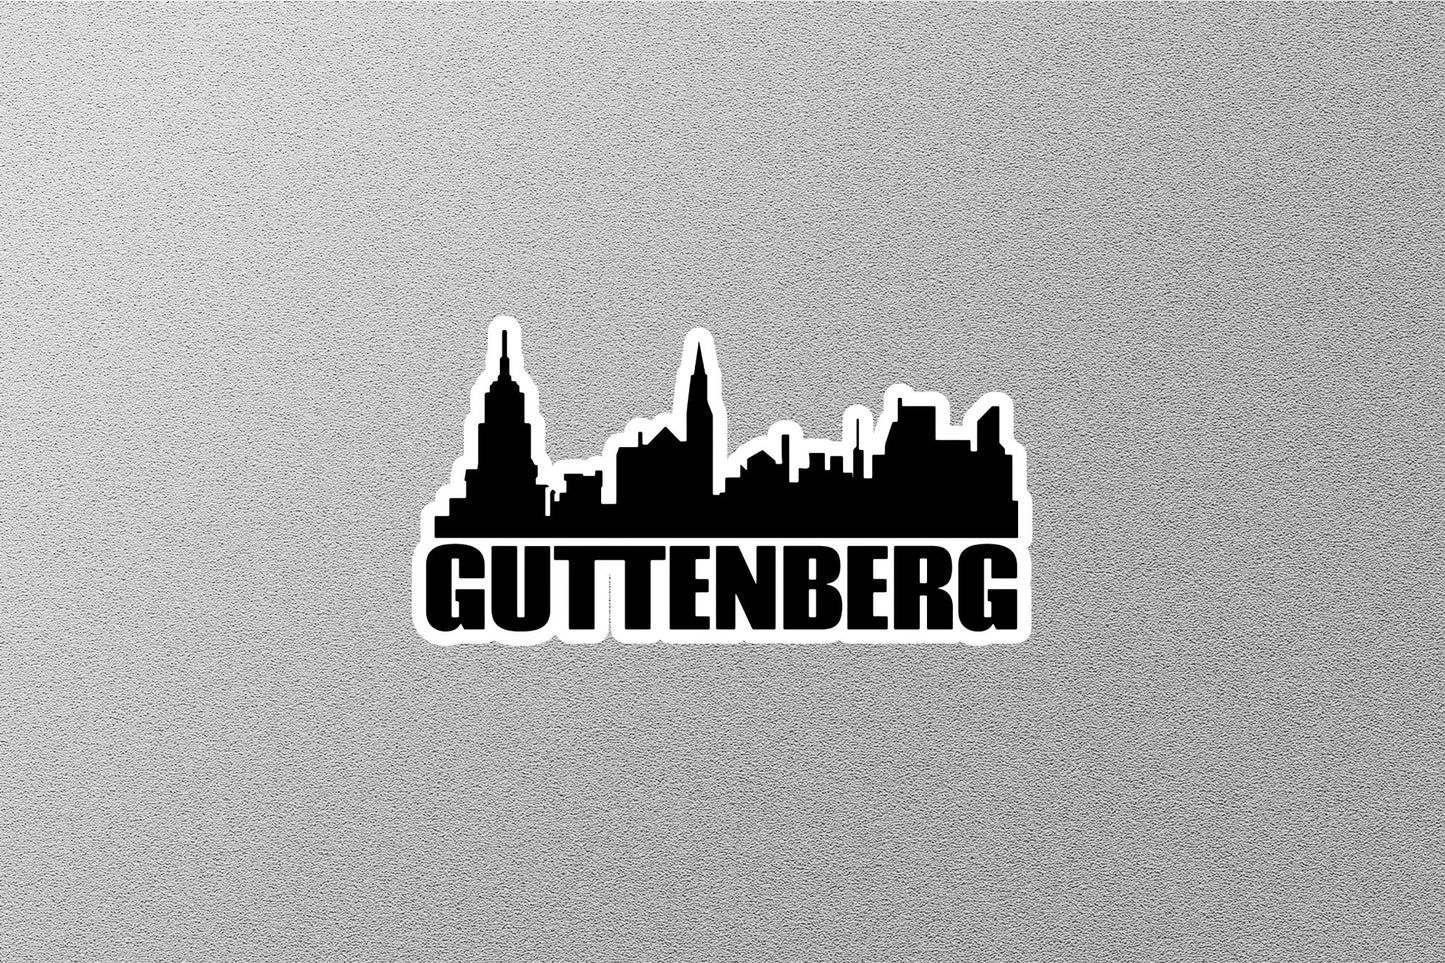 Guttenberg Skyline Sticker